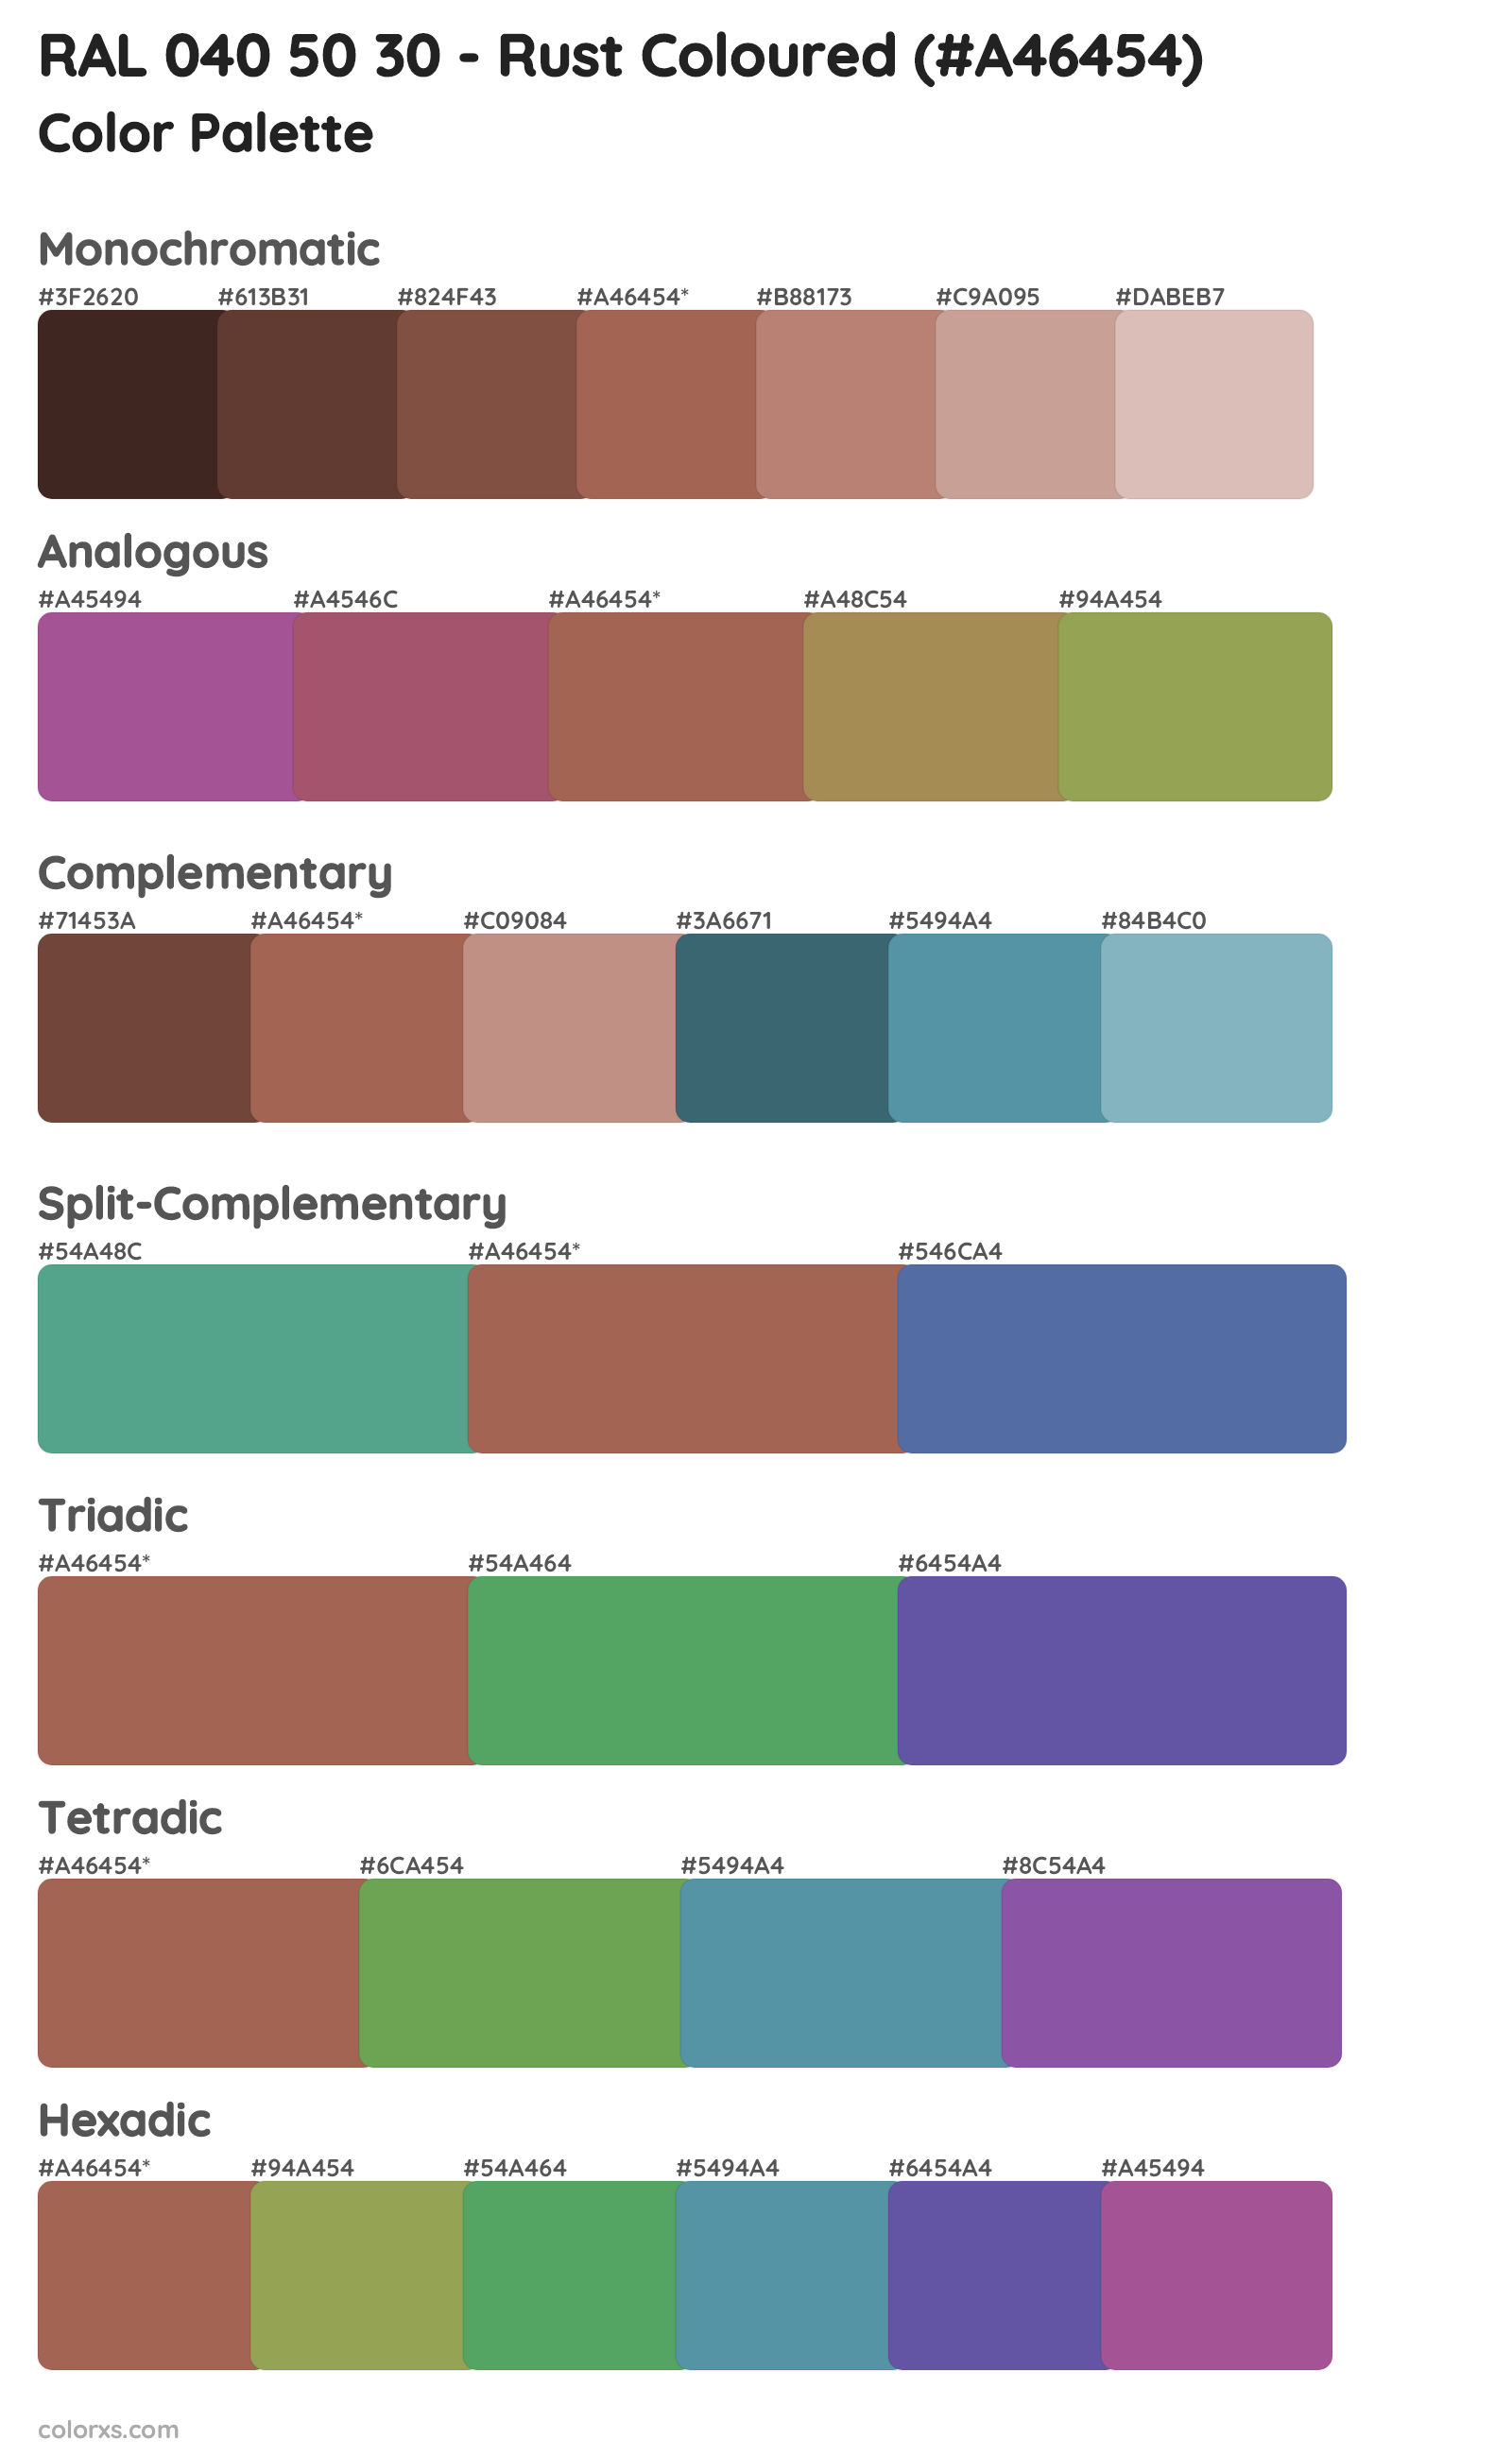 RAL 040 50 30 - Rust Coloured Color Scheme Palettes